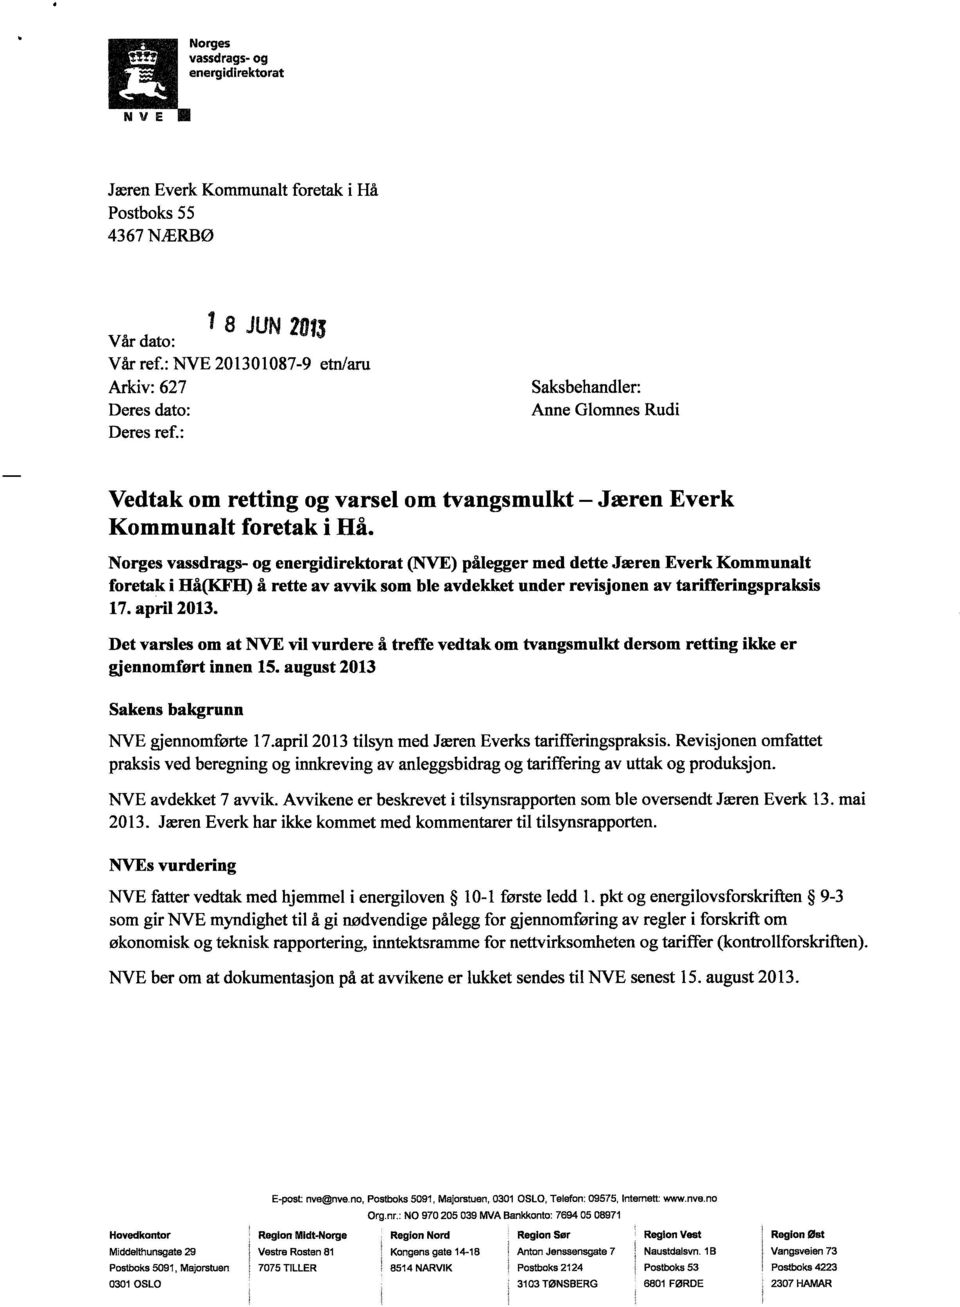 Norges vassdrags- og energidirektorat (NVE) pålegger med dette Jæren Everk Kommunalt foretak i Hå(KFII) å rette av avvik som ble avdekket under revisjonen av tarifferingspraksis 17. april 2013.